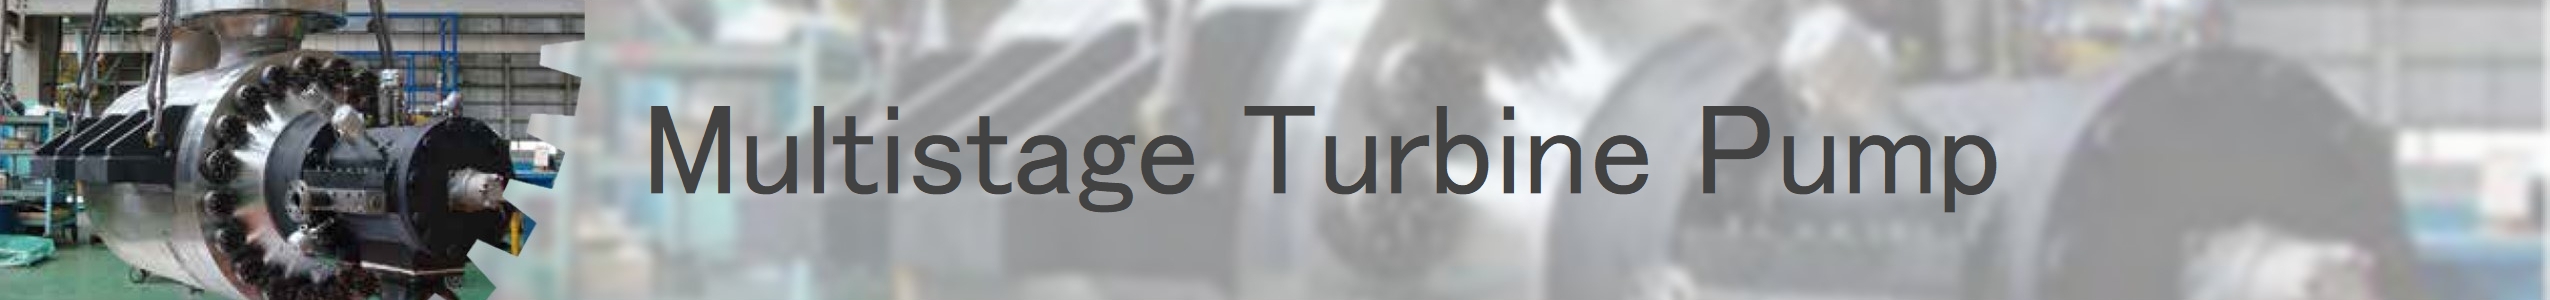 Multistage Turbine Pump